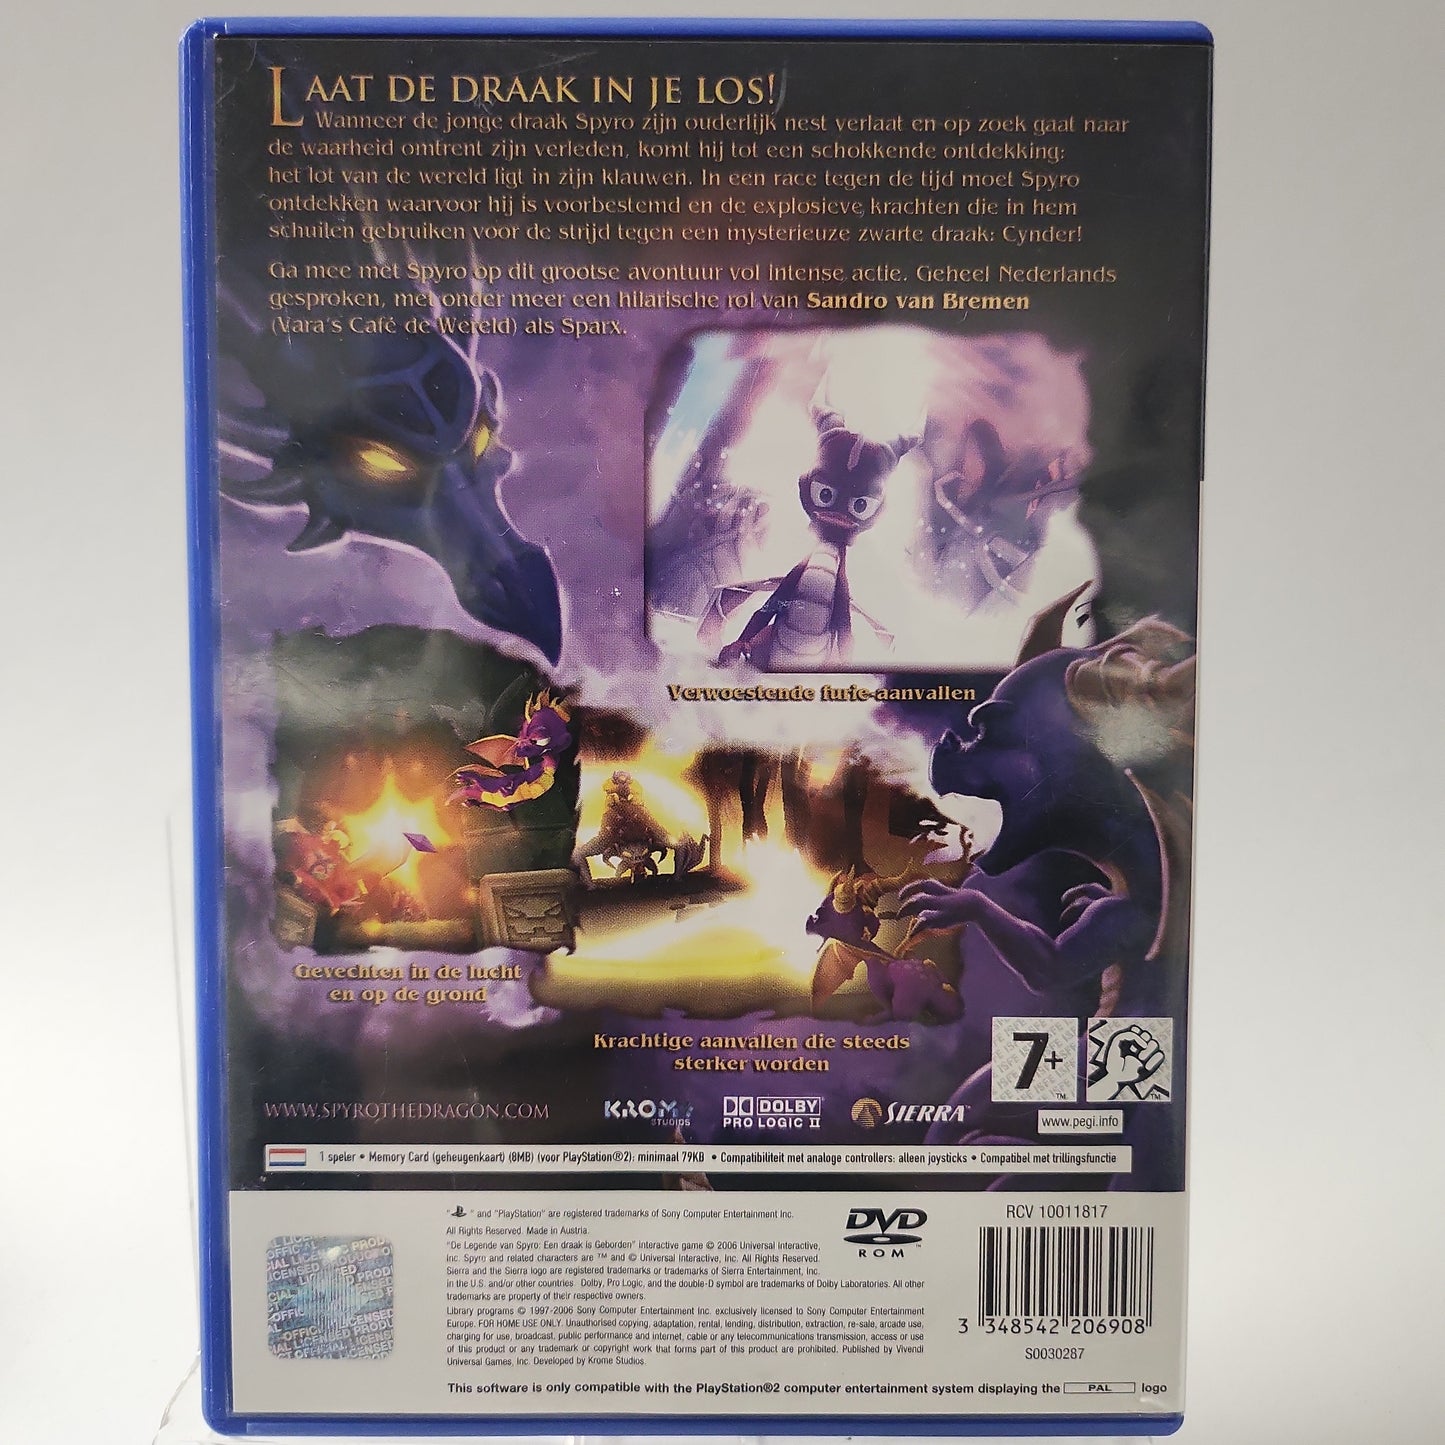 Die Legende von Spyro, einem Drachen, wurde auf der Playstation 2 geboren